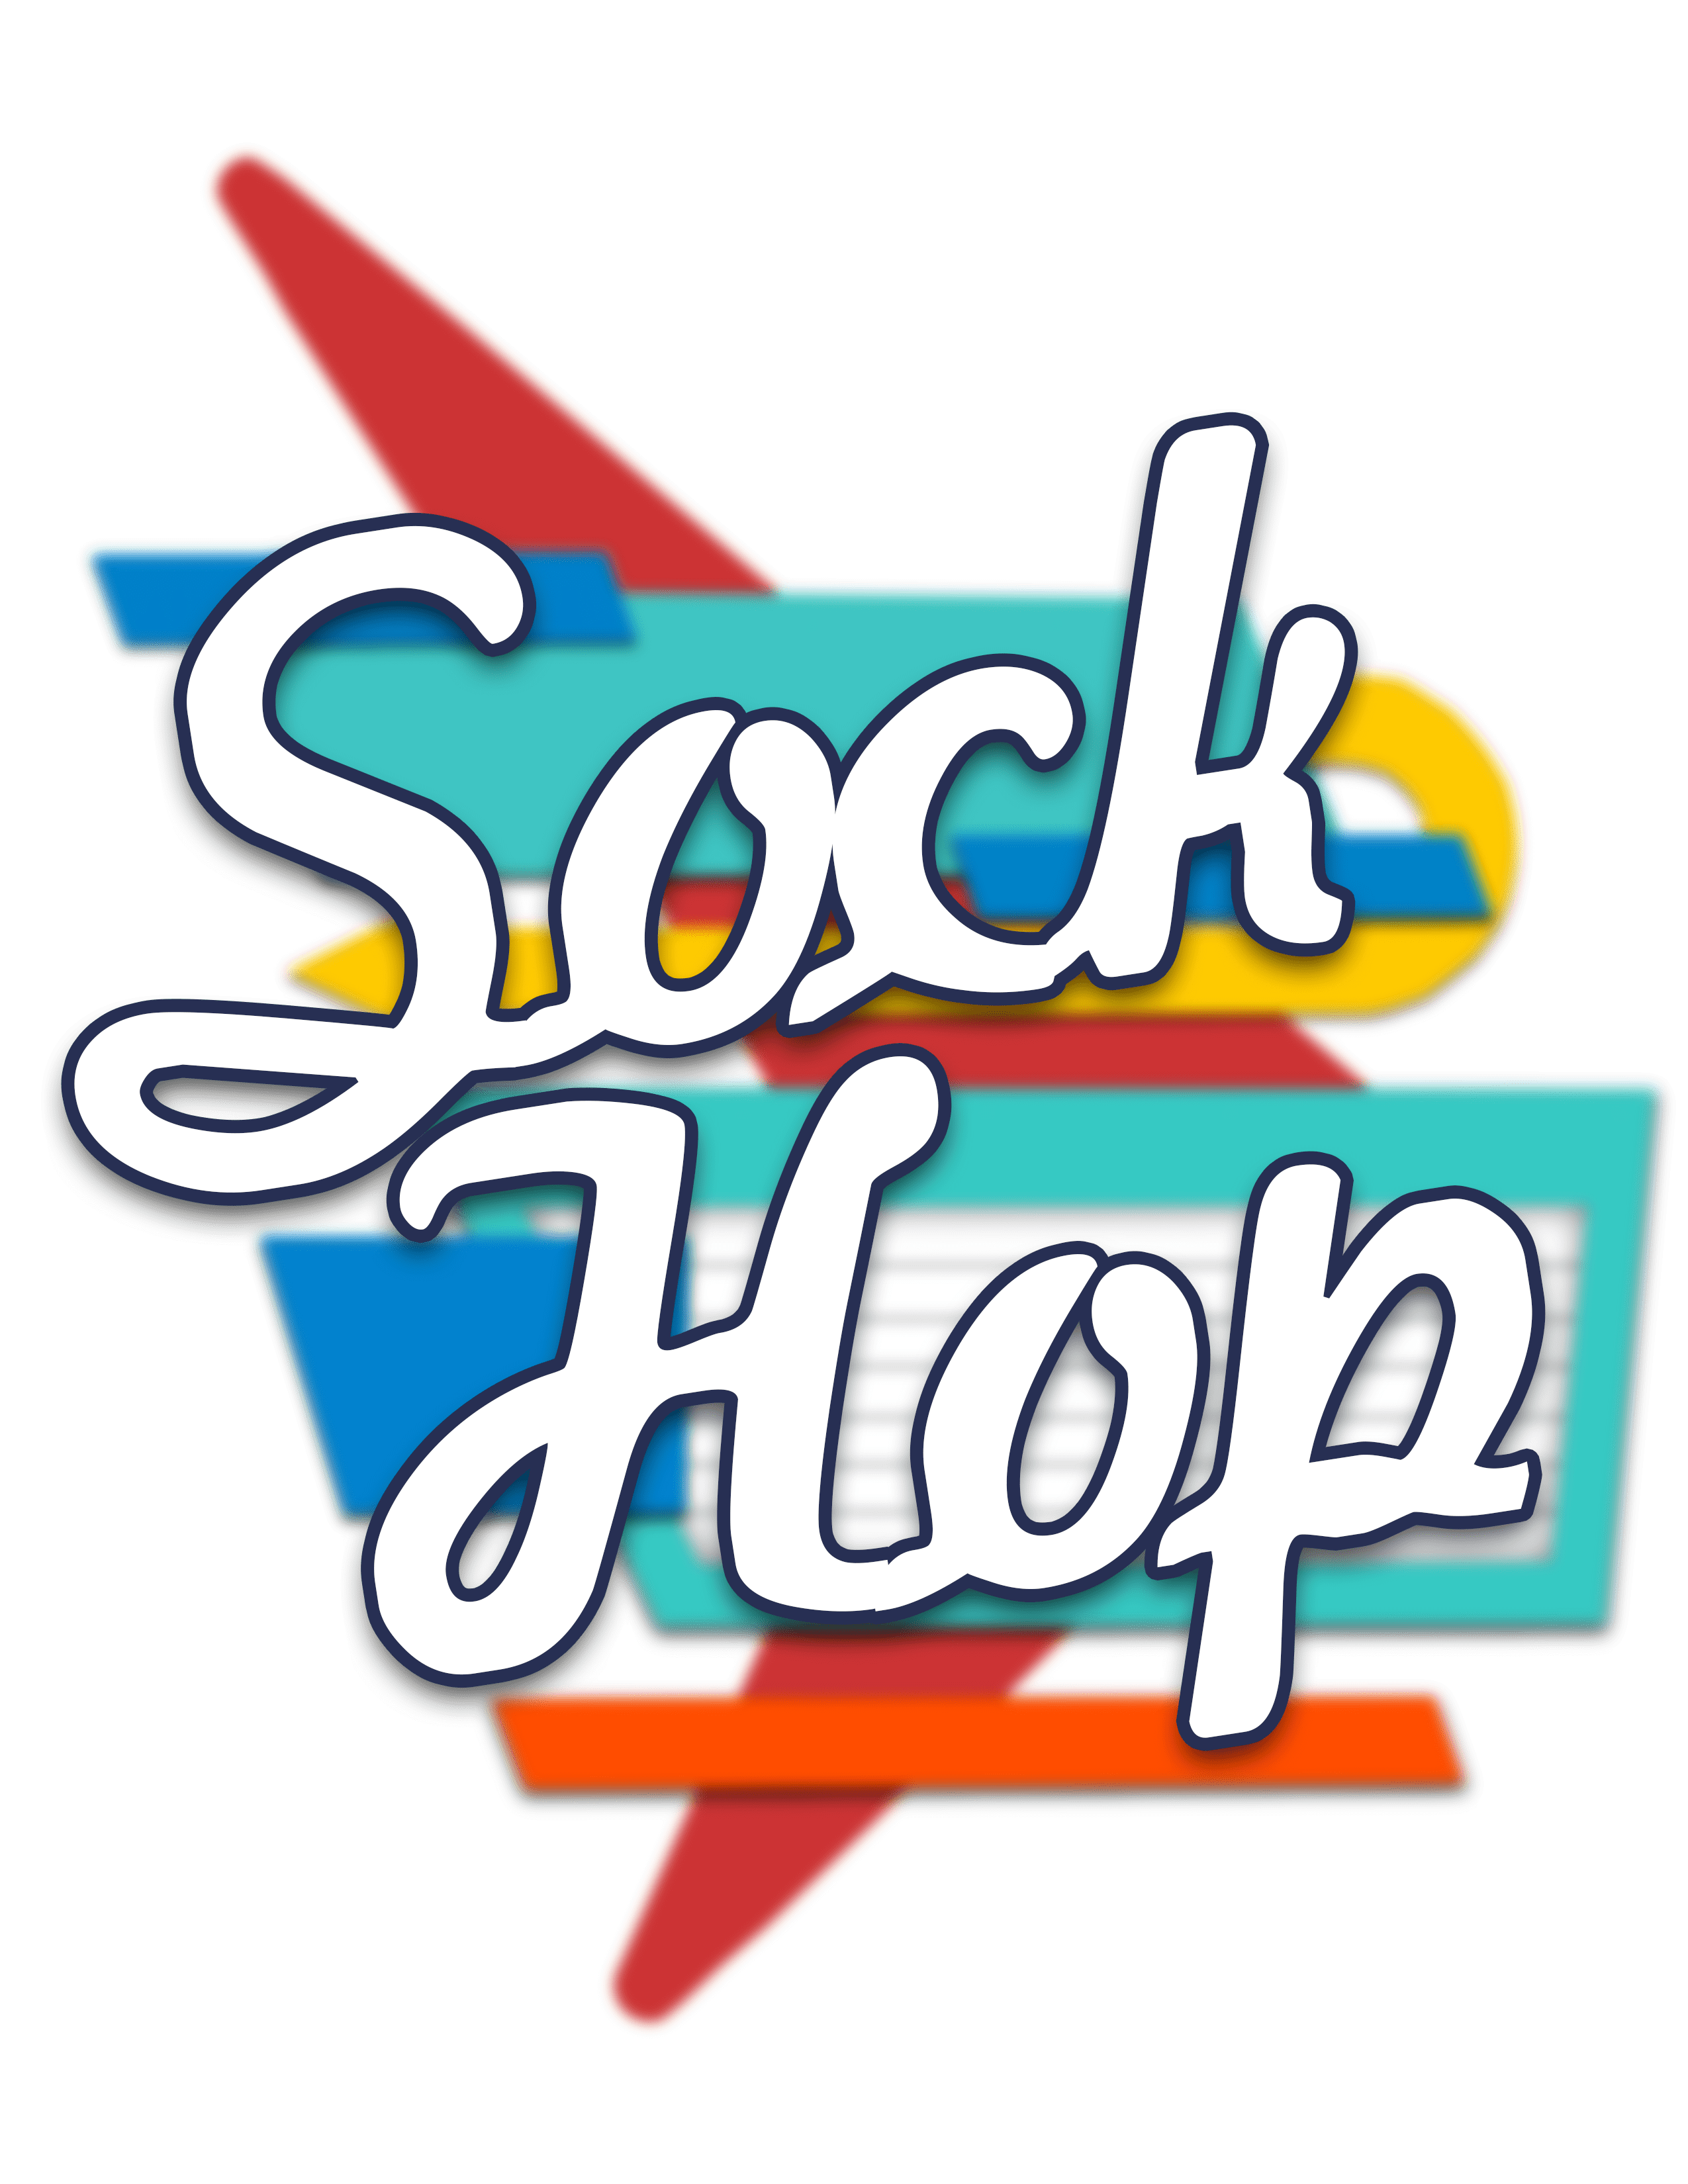 a sock hop